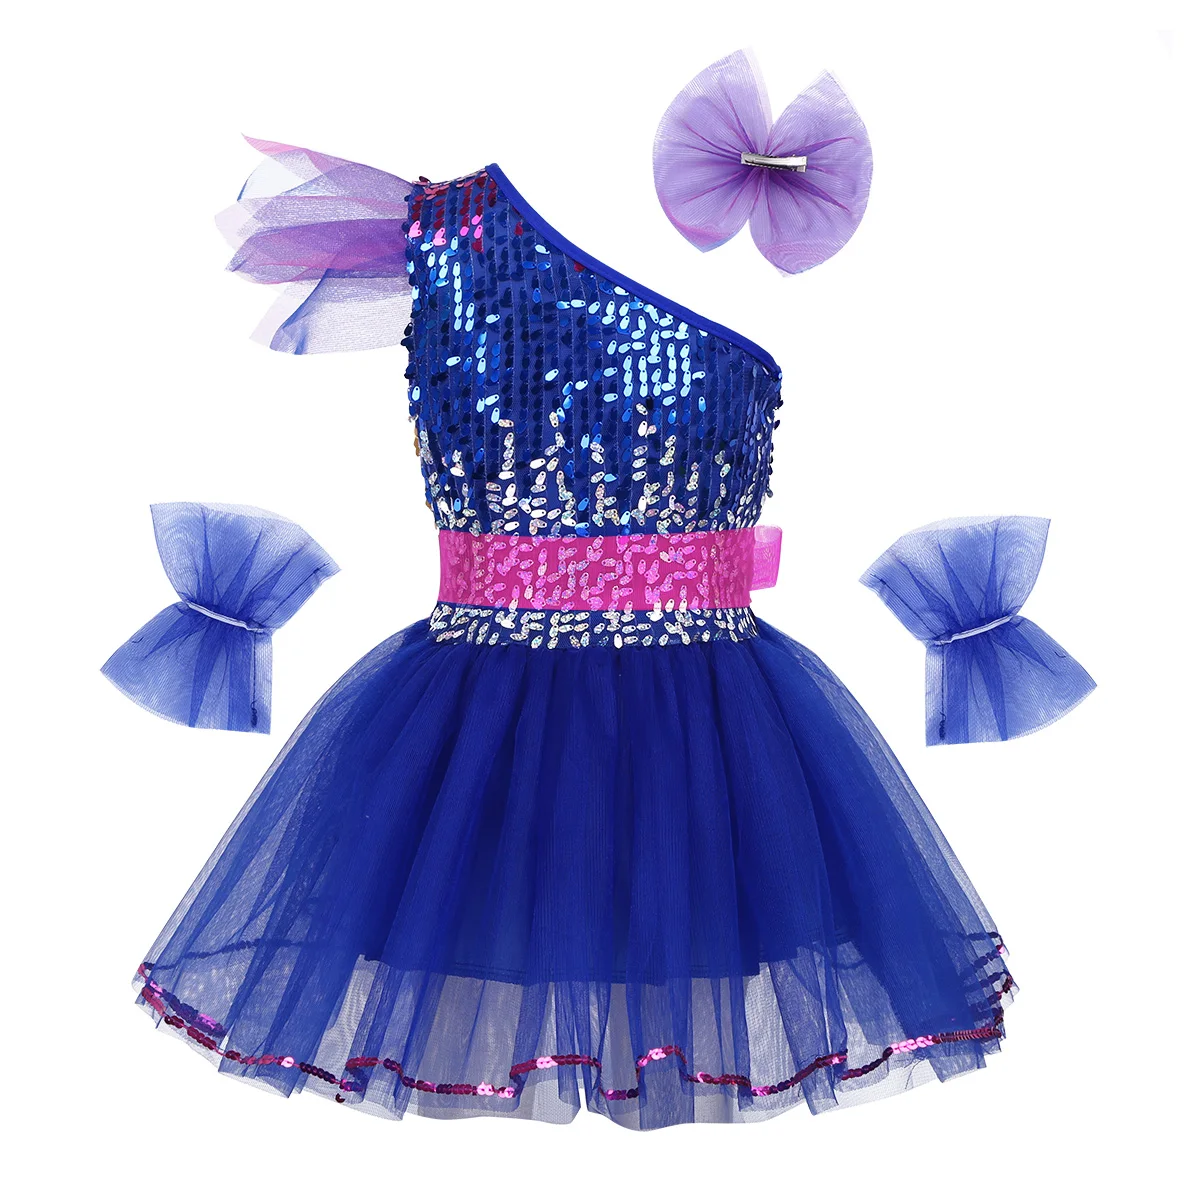 Детское платье-пачка с блестками для джазовых танцев; синий детский современный танцевальный костюм на одно плечо для девочек; уличное платье для сцены в стиле хип-хоп